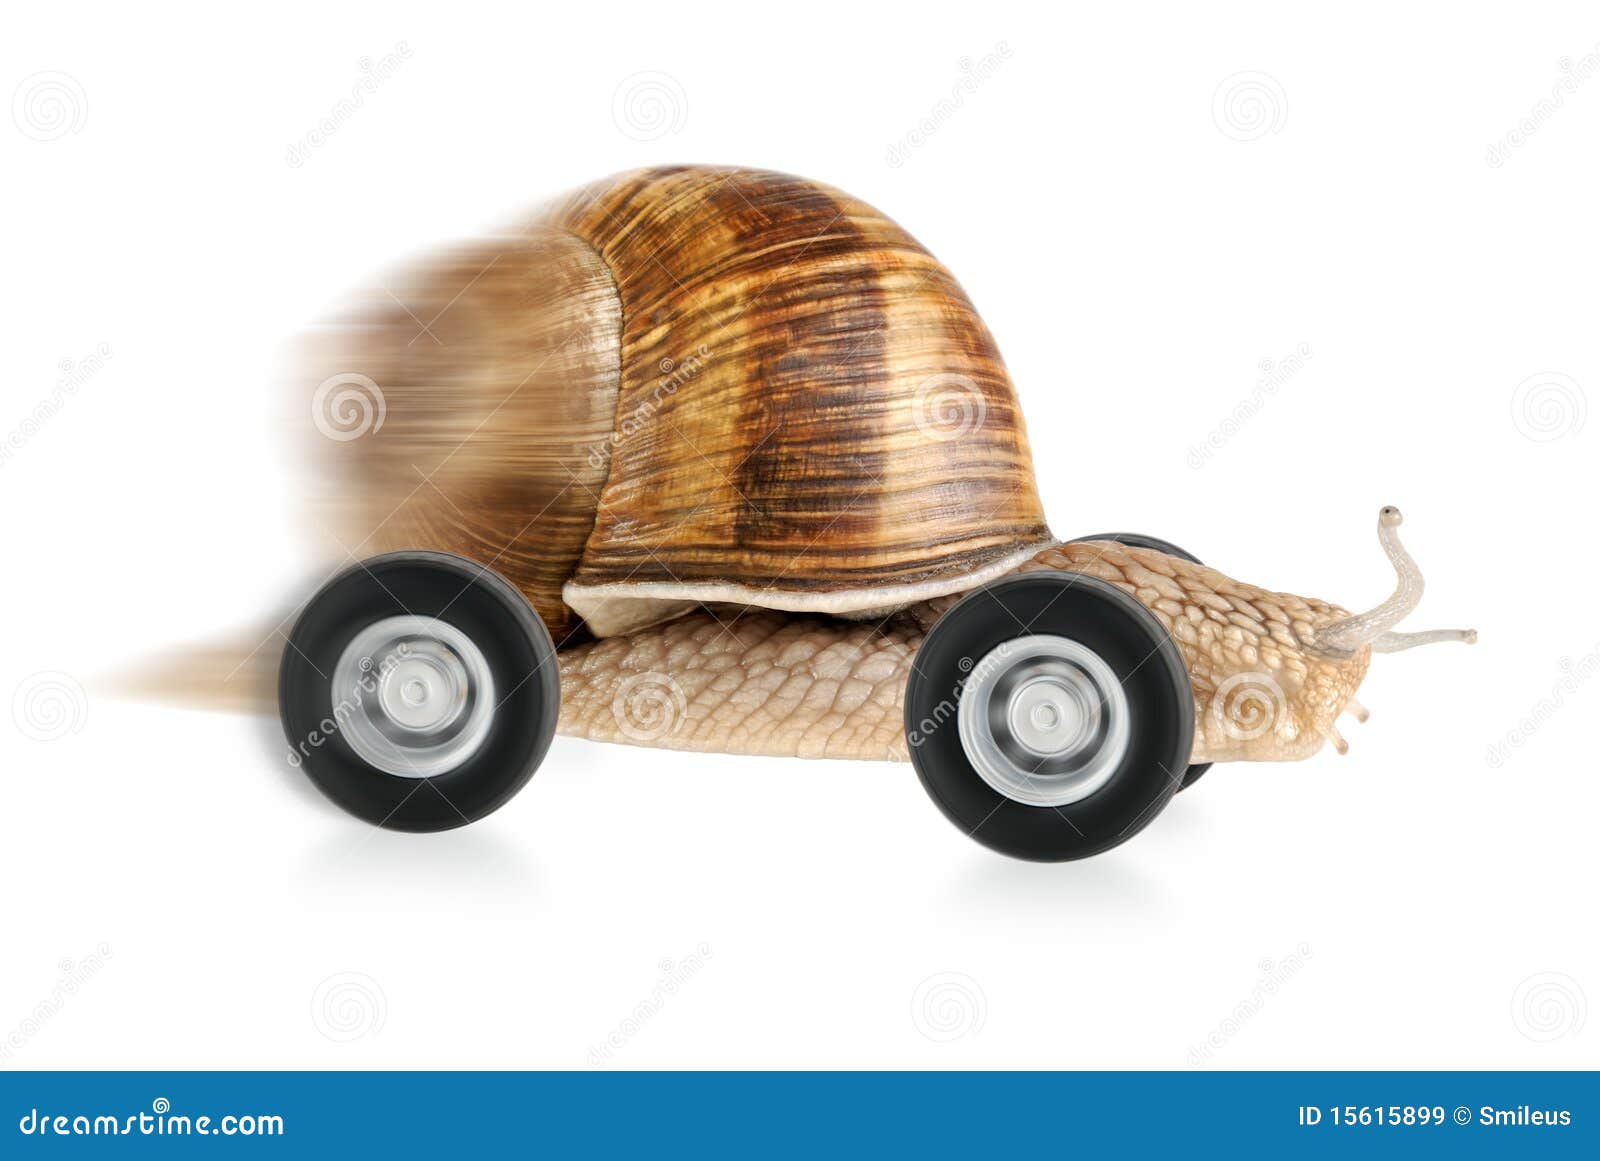 speedy snail on wheels